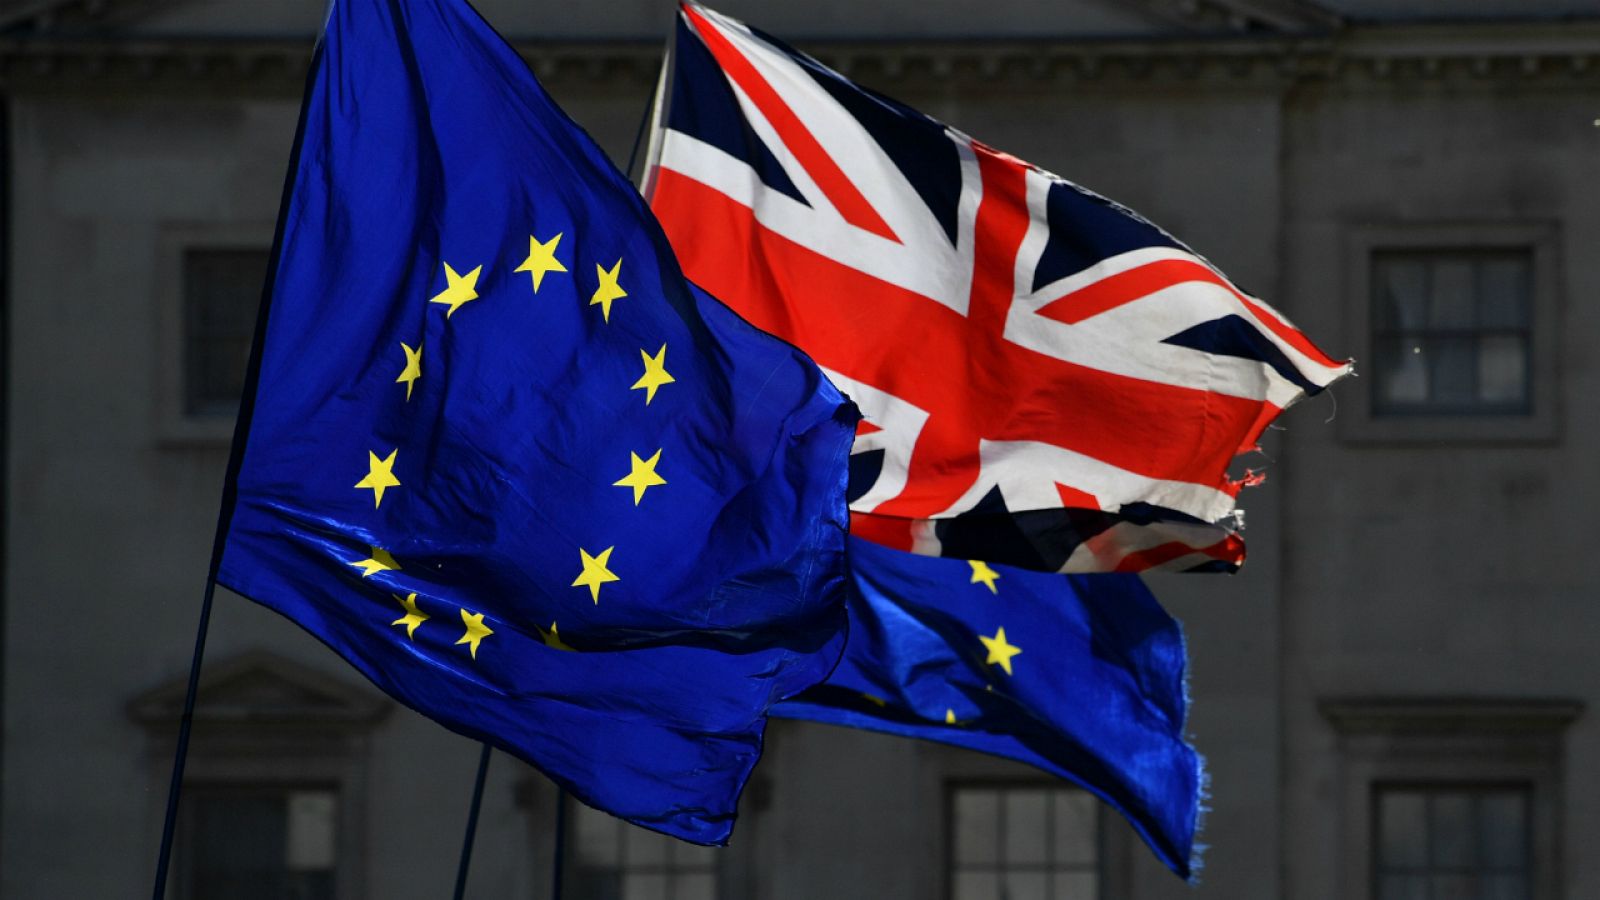 Las banderas de la UE y el Reino Unido ondean frente al Parlamento británico.